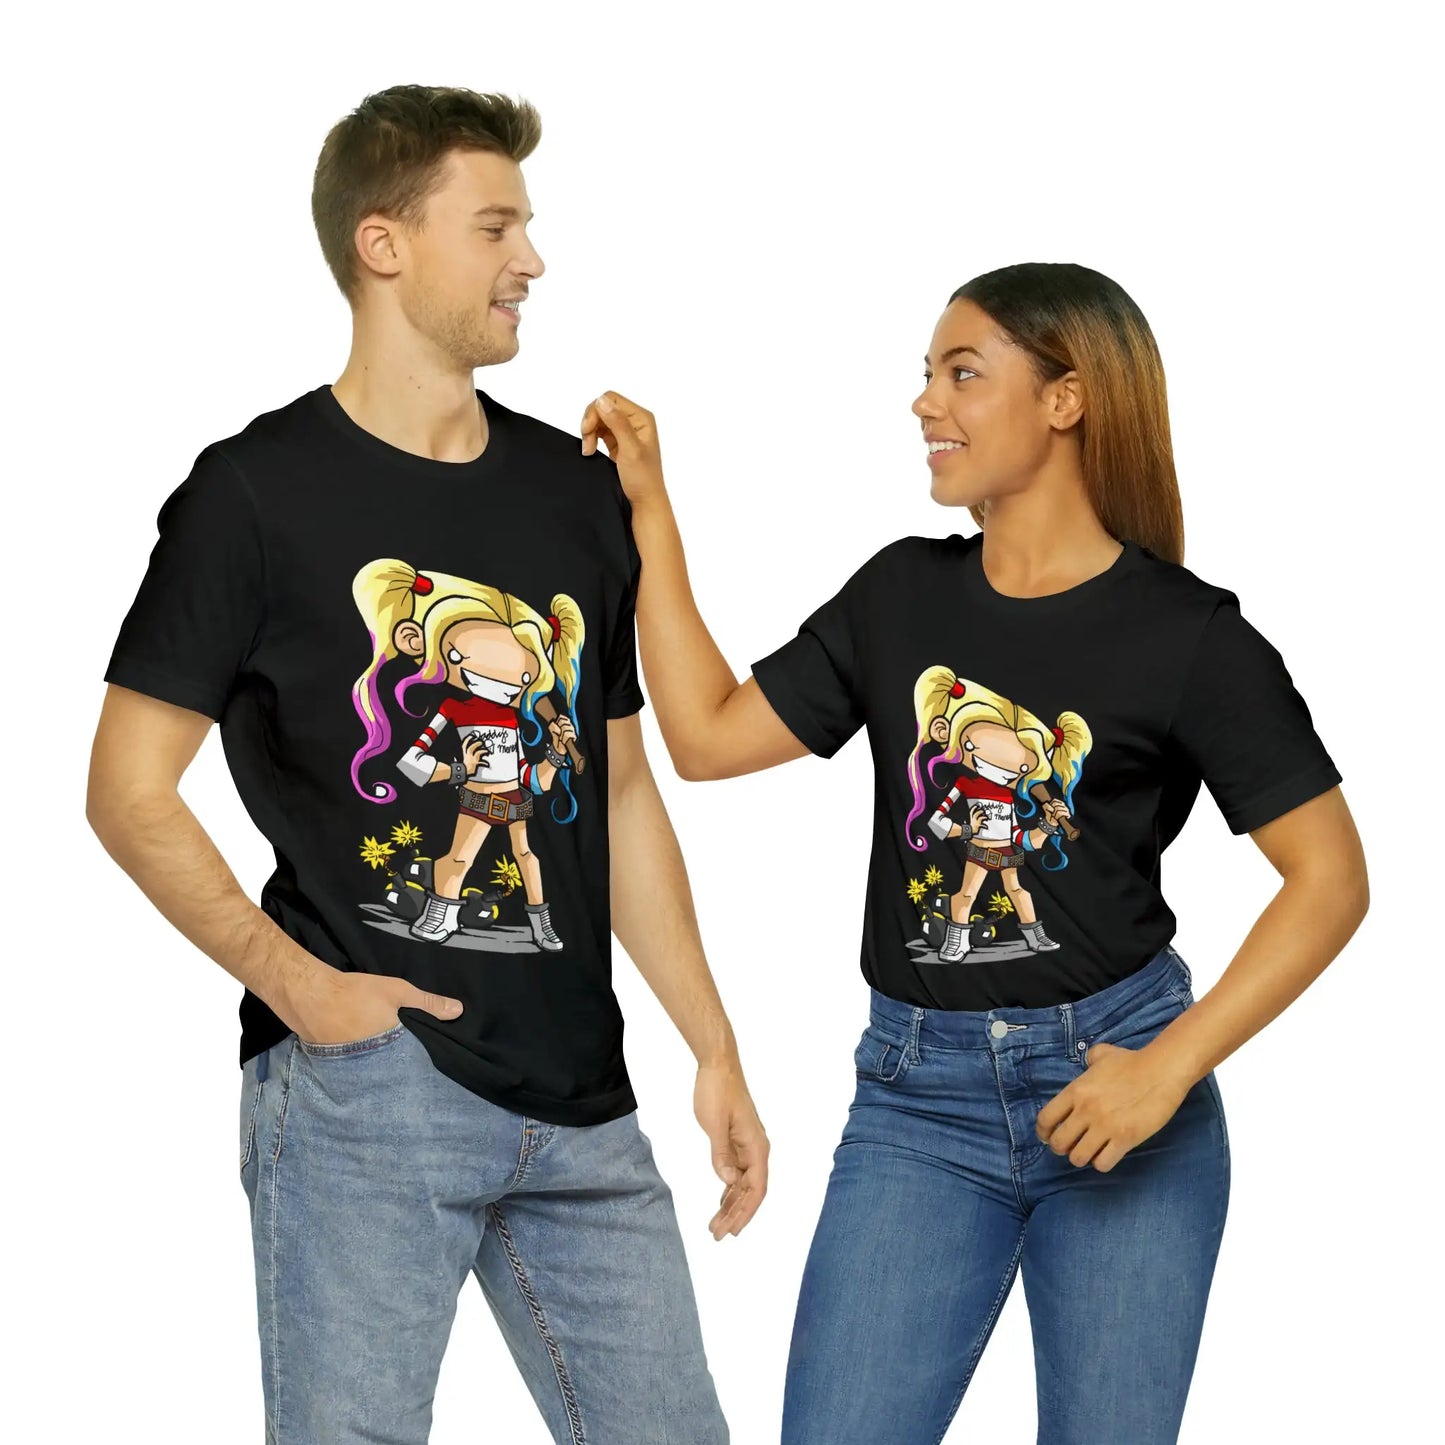 Harley Quinn T-Shirt Cartoon Chibi Style The Joker Villain Gift Tee Unisex For Men and Women